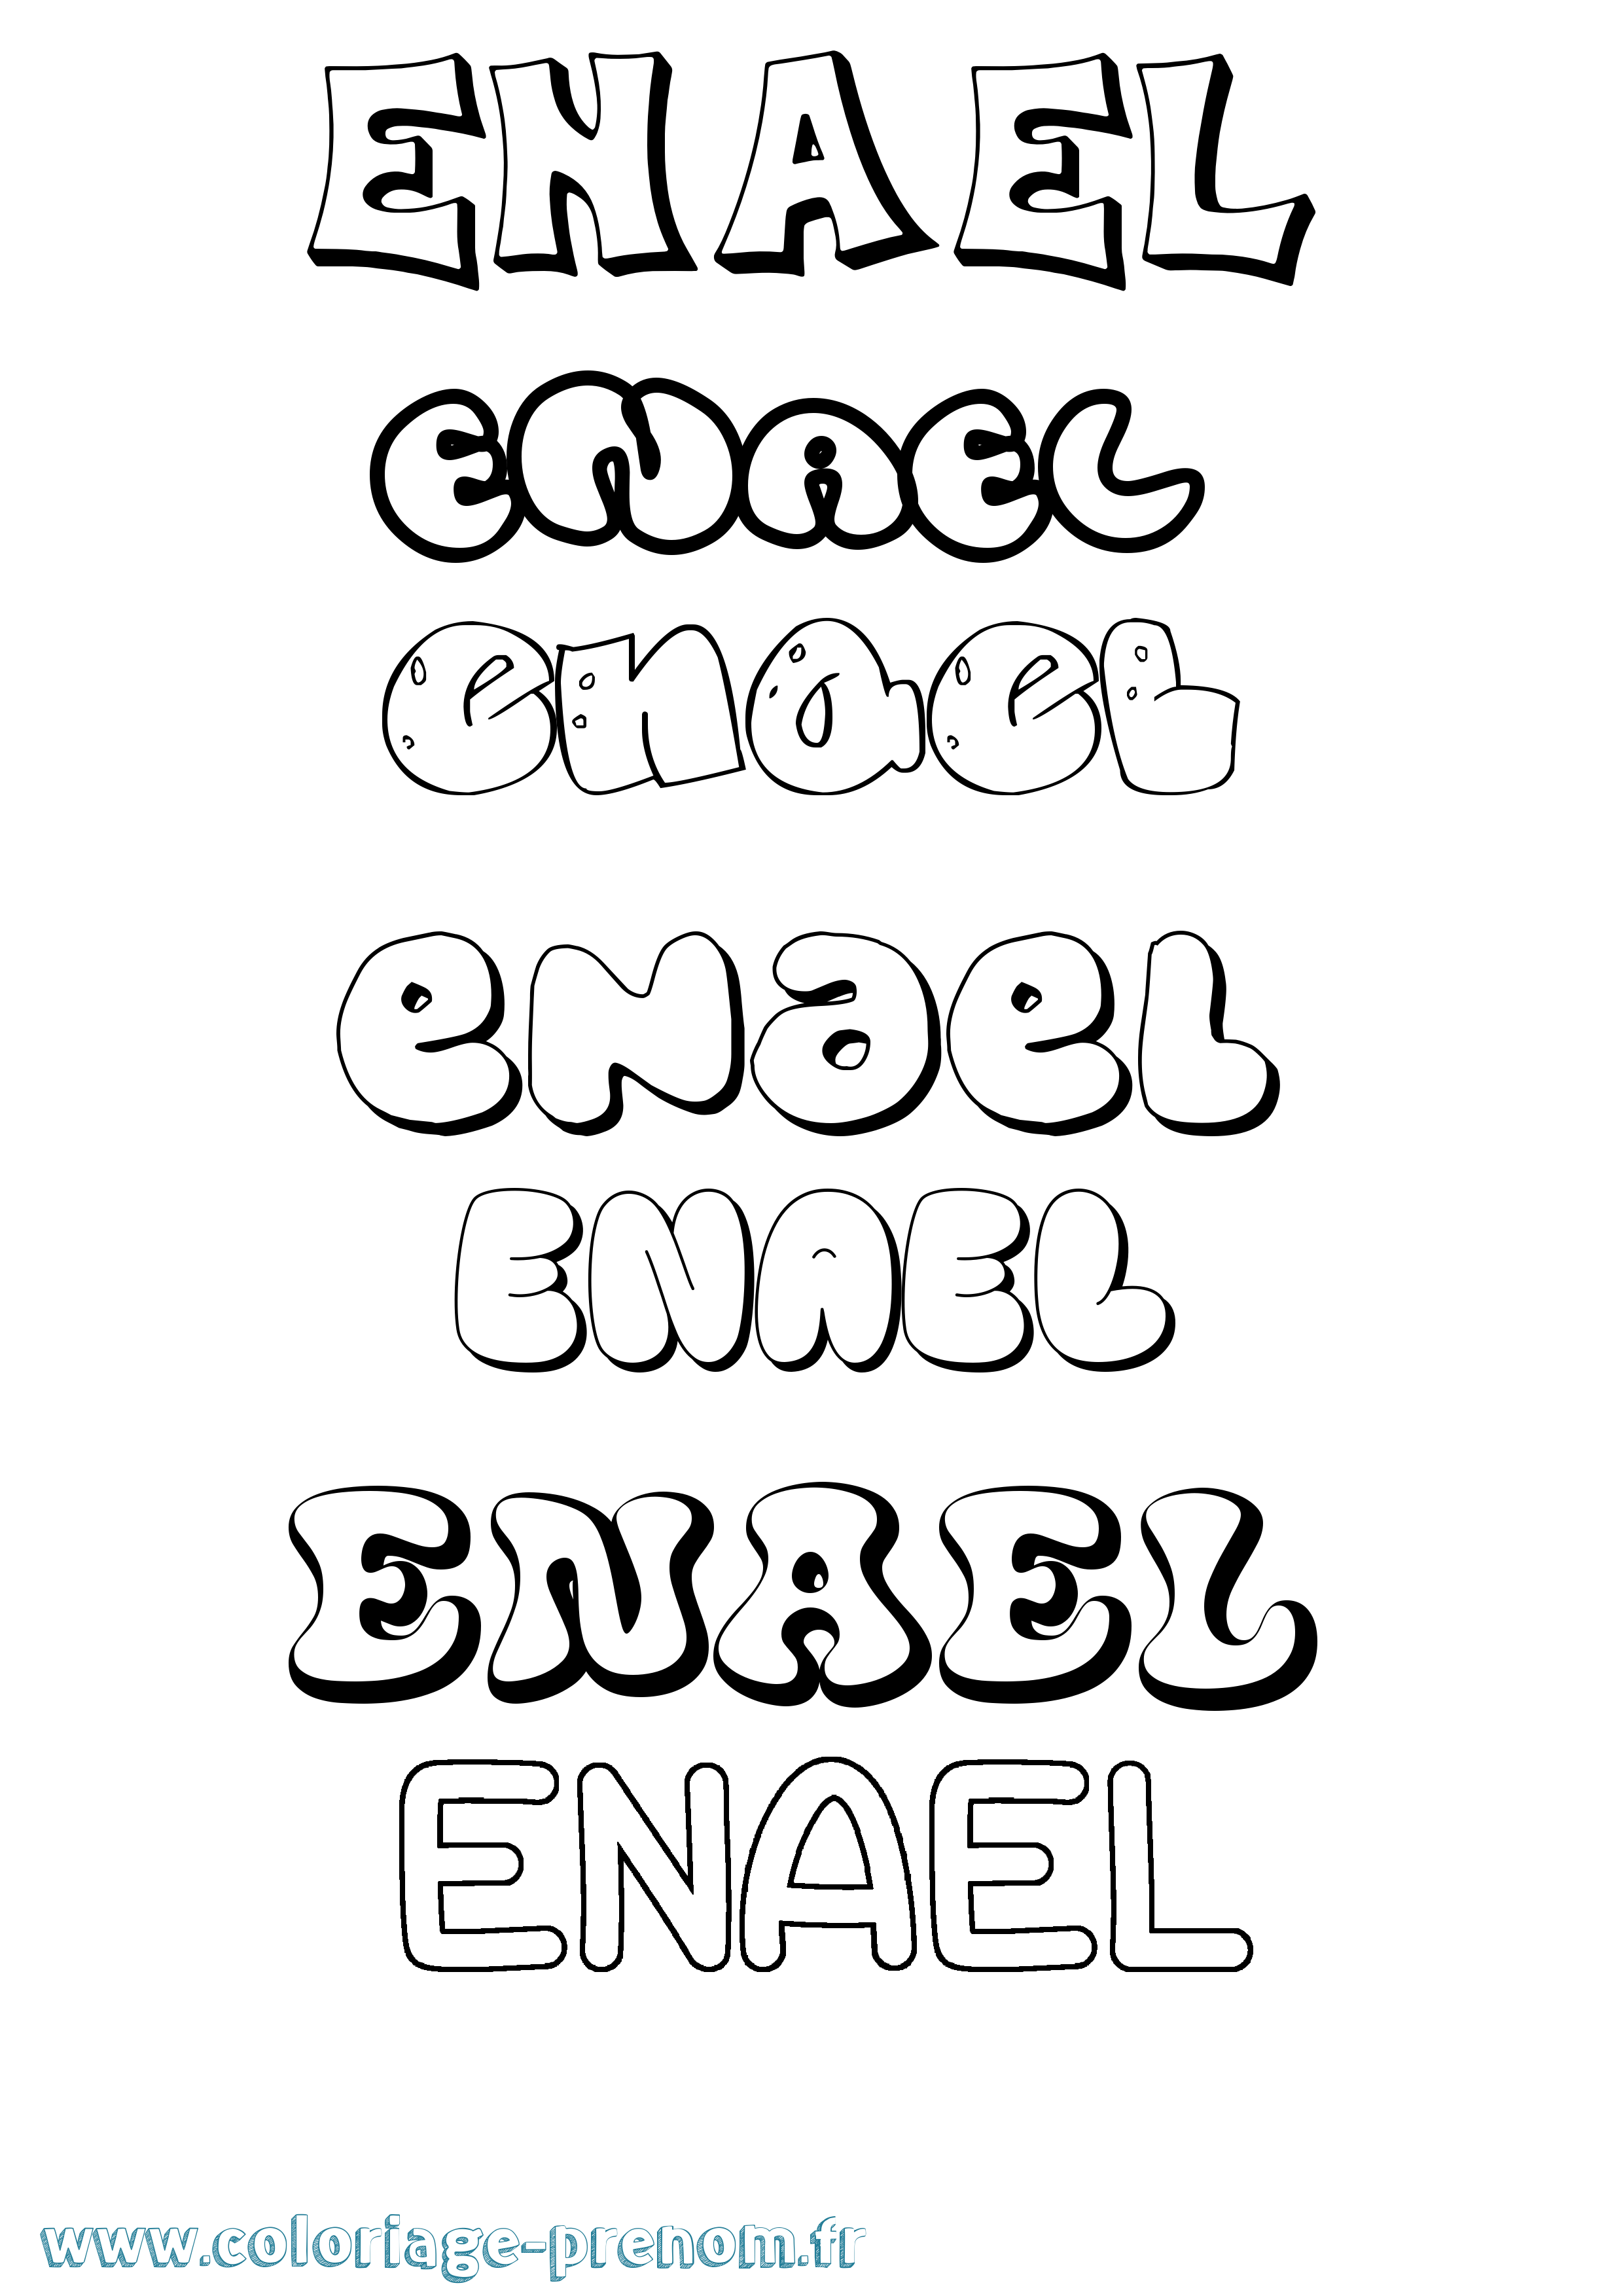 Coloriage prénom Enael Bubble